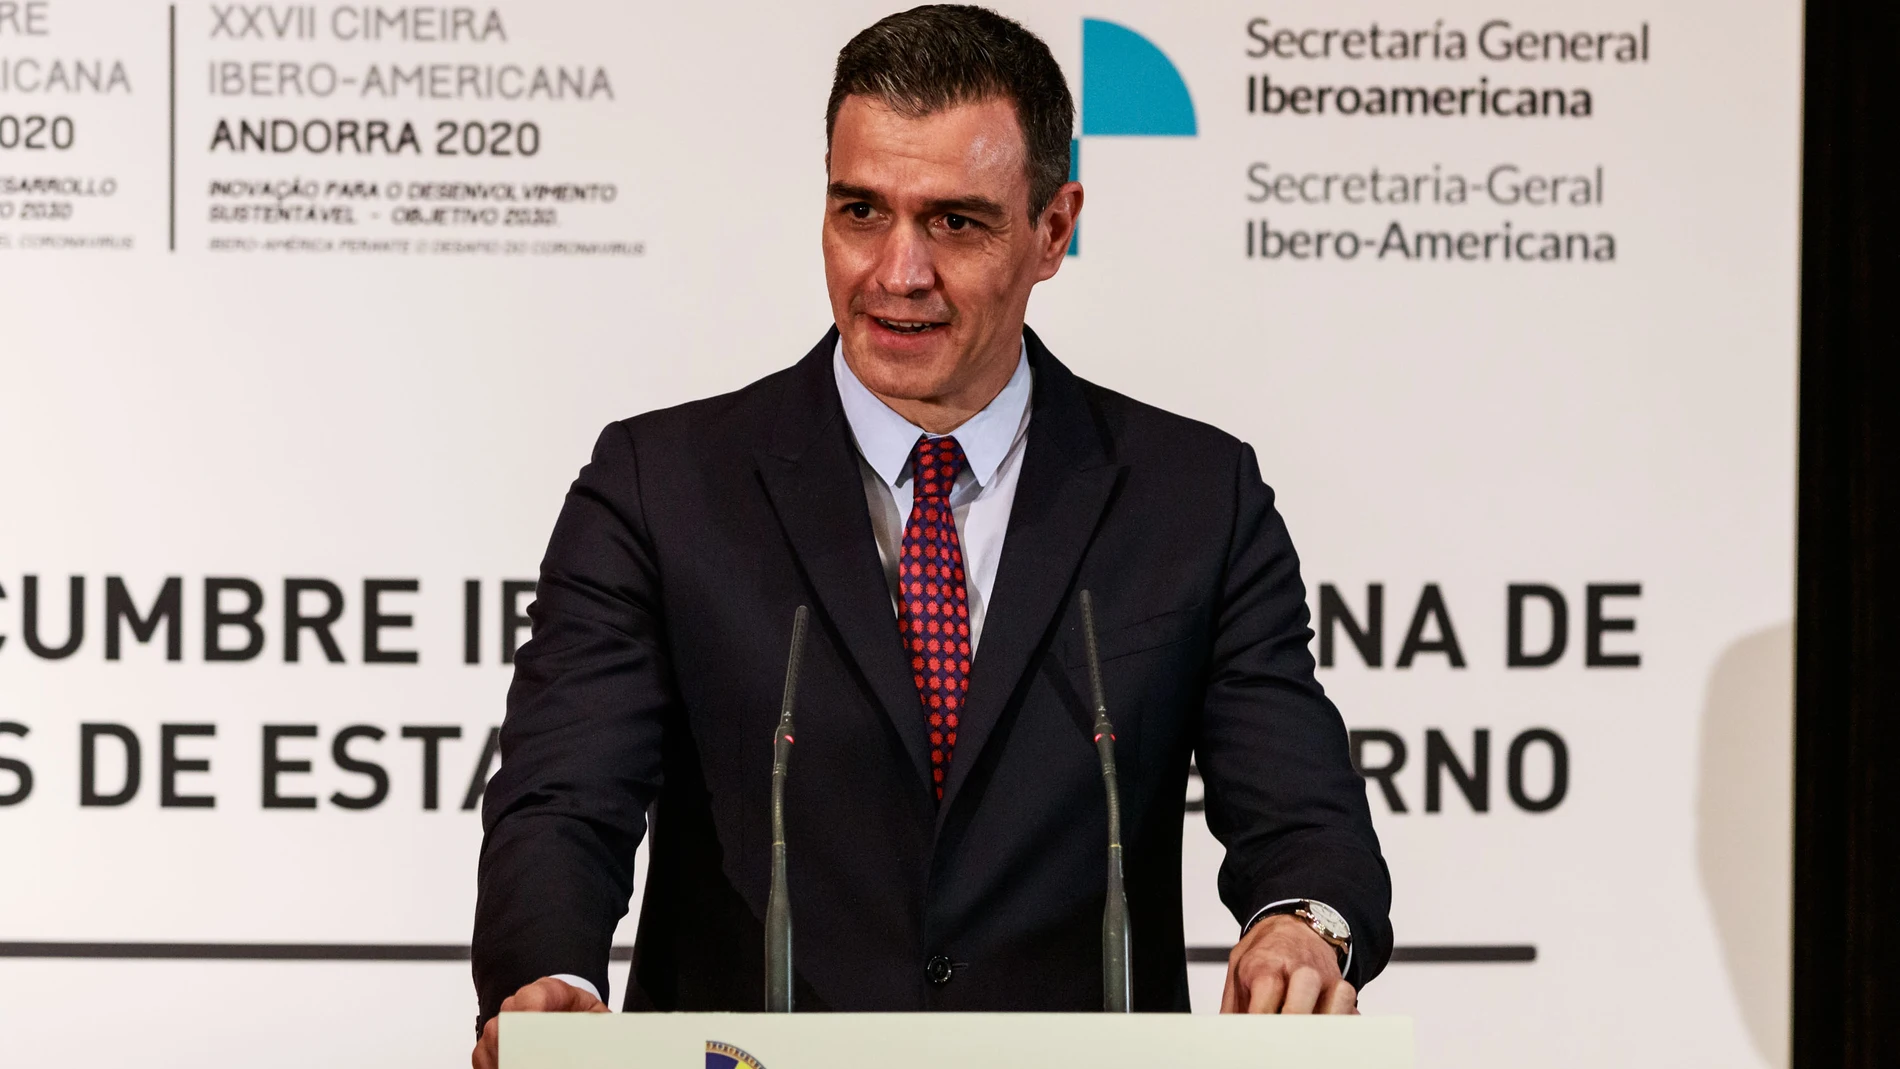 El presidente del Gobierno de España, Pedro Sánchez, comparece ante los medios de comunicación tras la celebración del pleno del XXVII Cumbre Iberoamericana